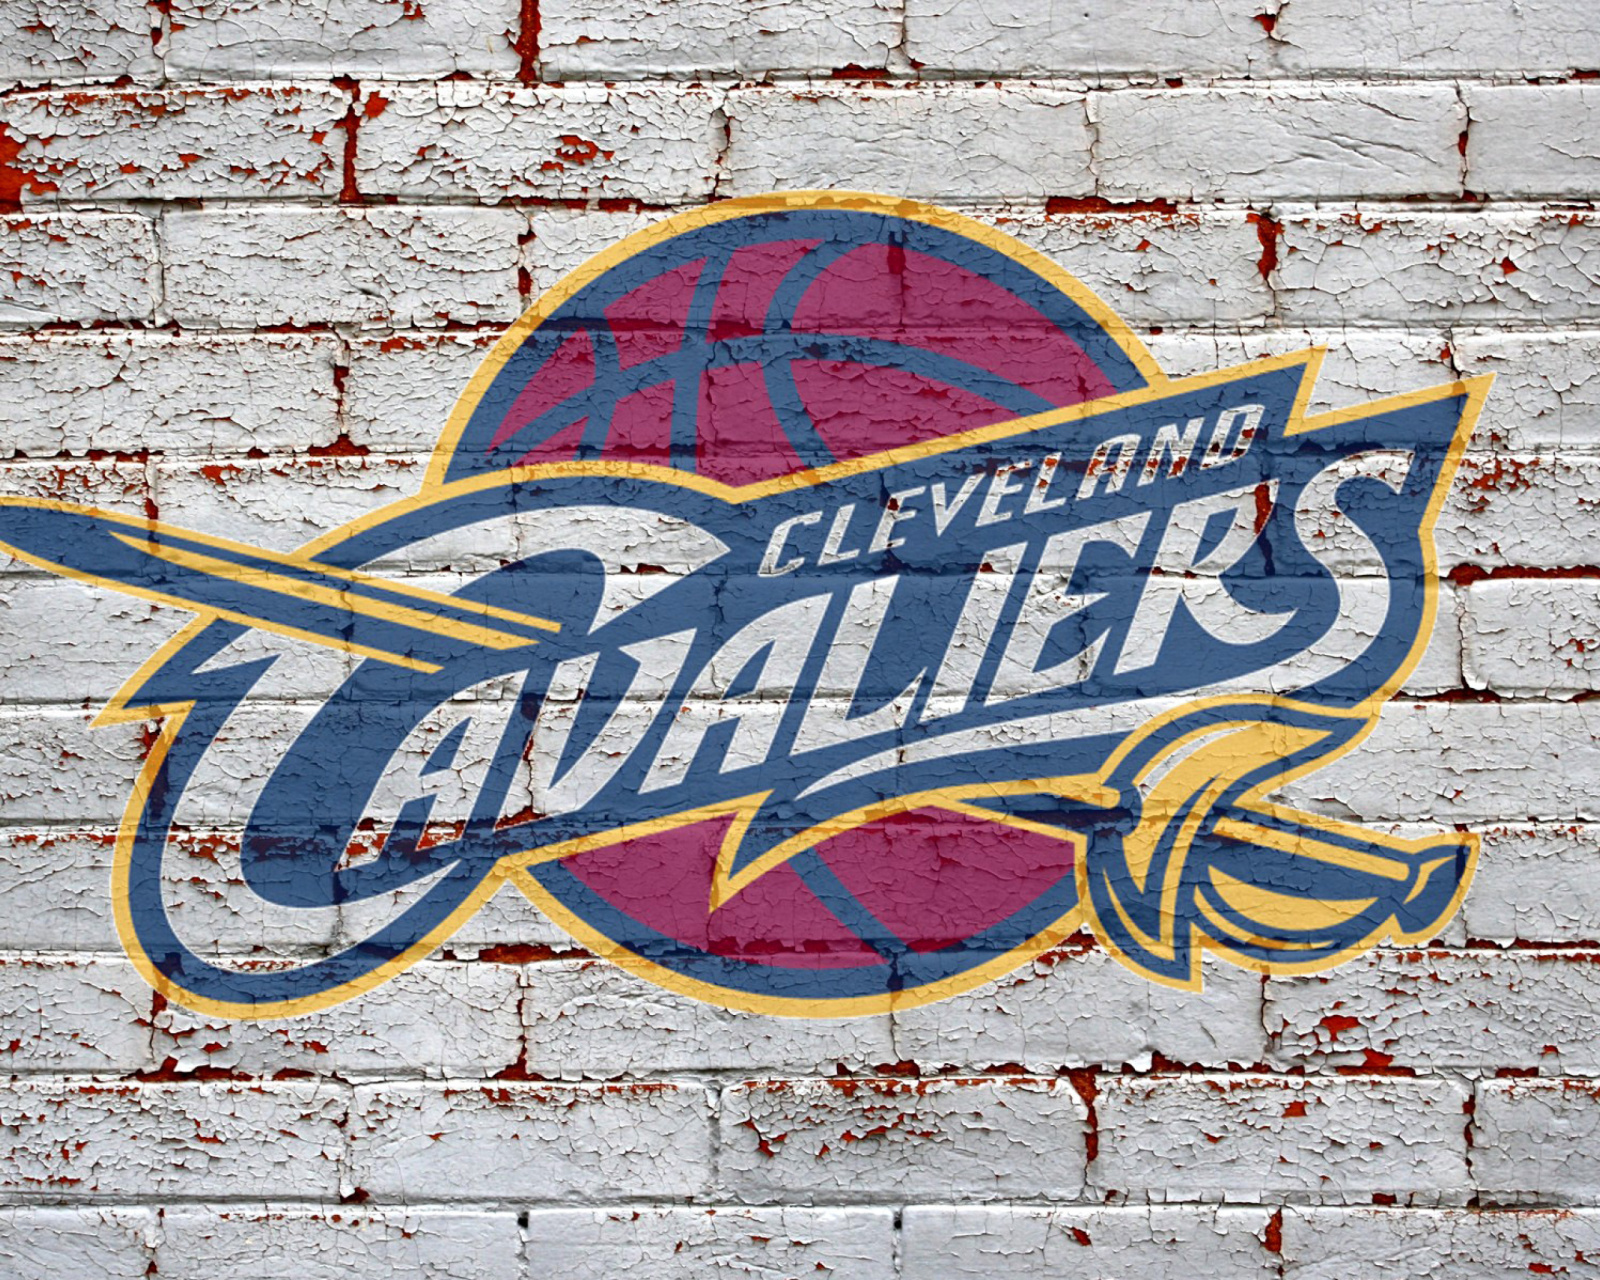 Cleveland Cavaliers NBA Basketball Team wallpaper 1600x1280